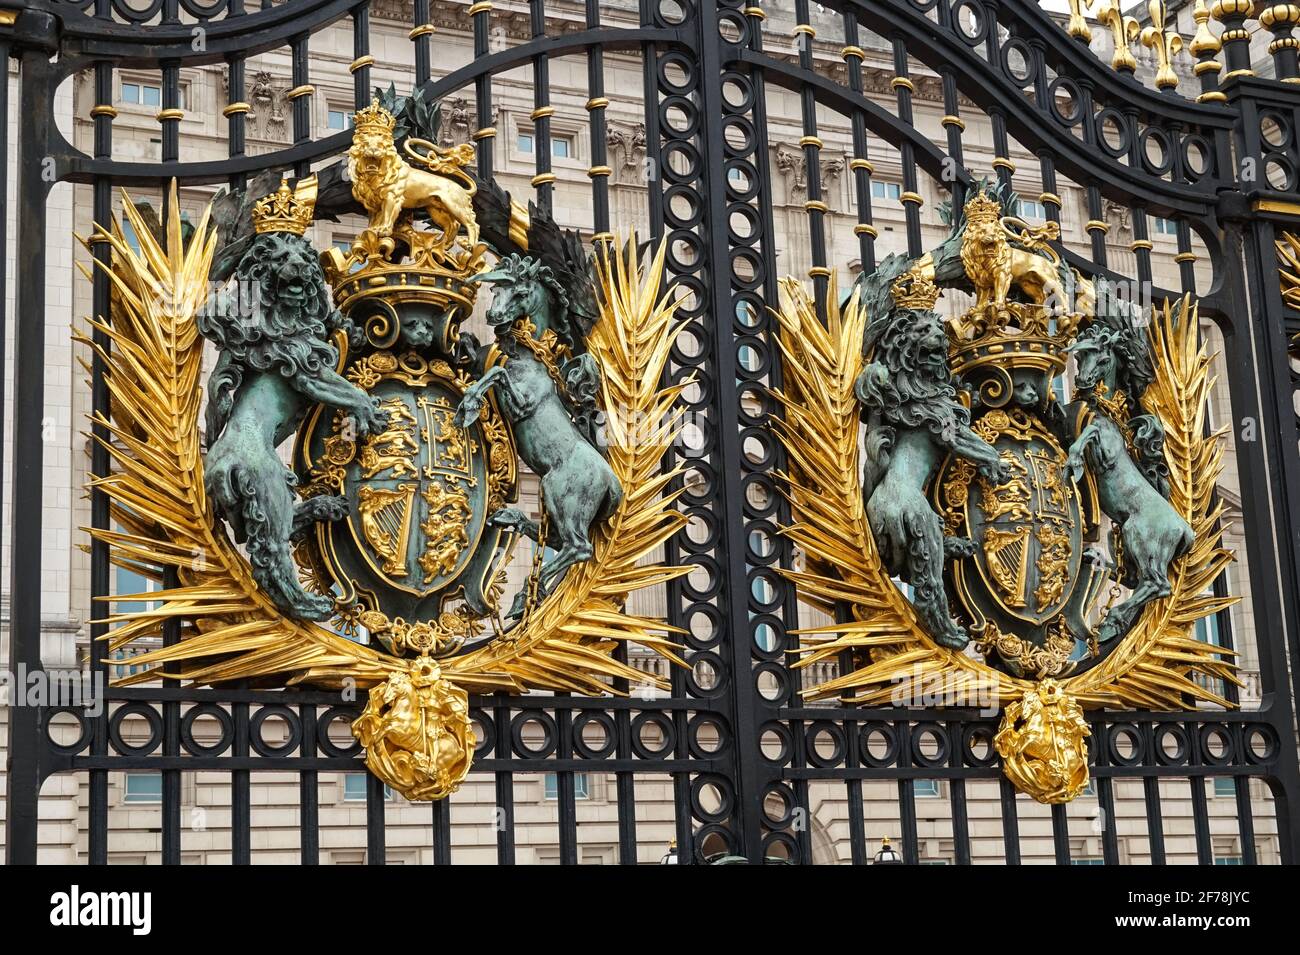 Royal Crest, escudo de armas real del Reino Unido en la puerta del Palacio de Buckingham, Londres Inglaterra Reino Unido Foto de stock